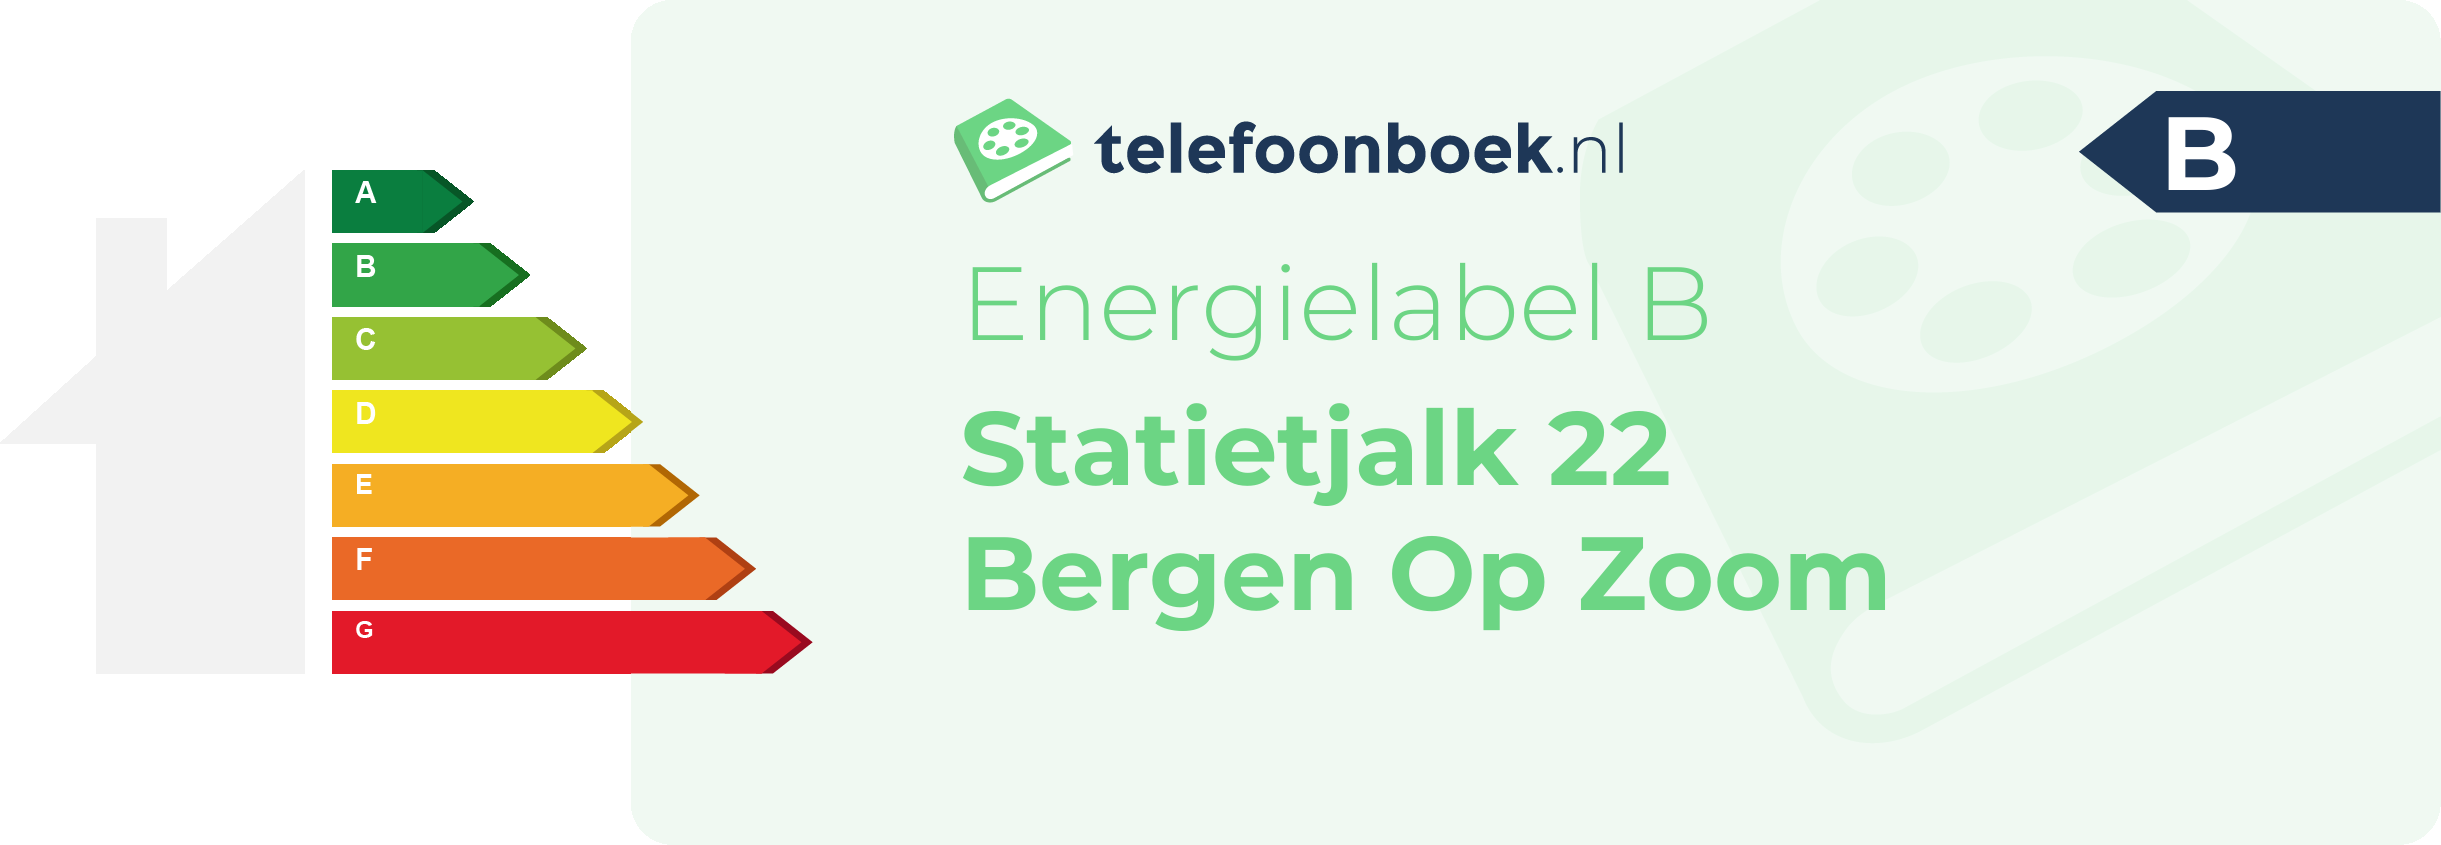 Energielabel Statietjalk 22 Bergen Op Zoom